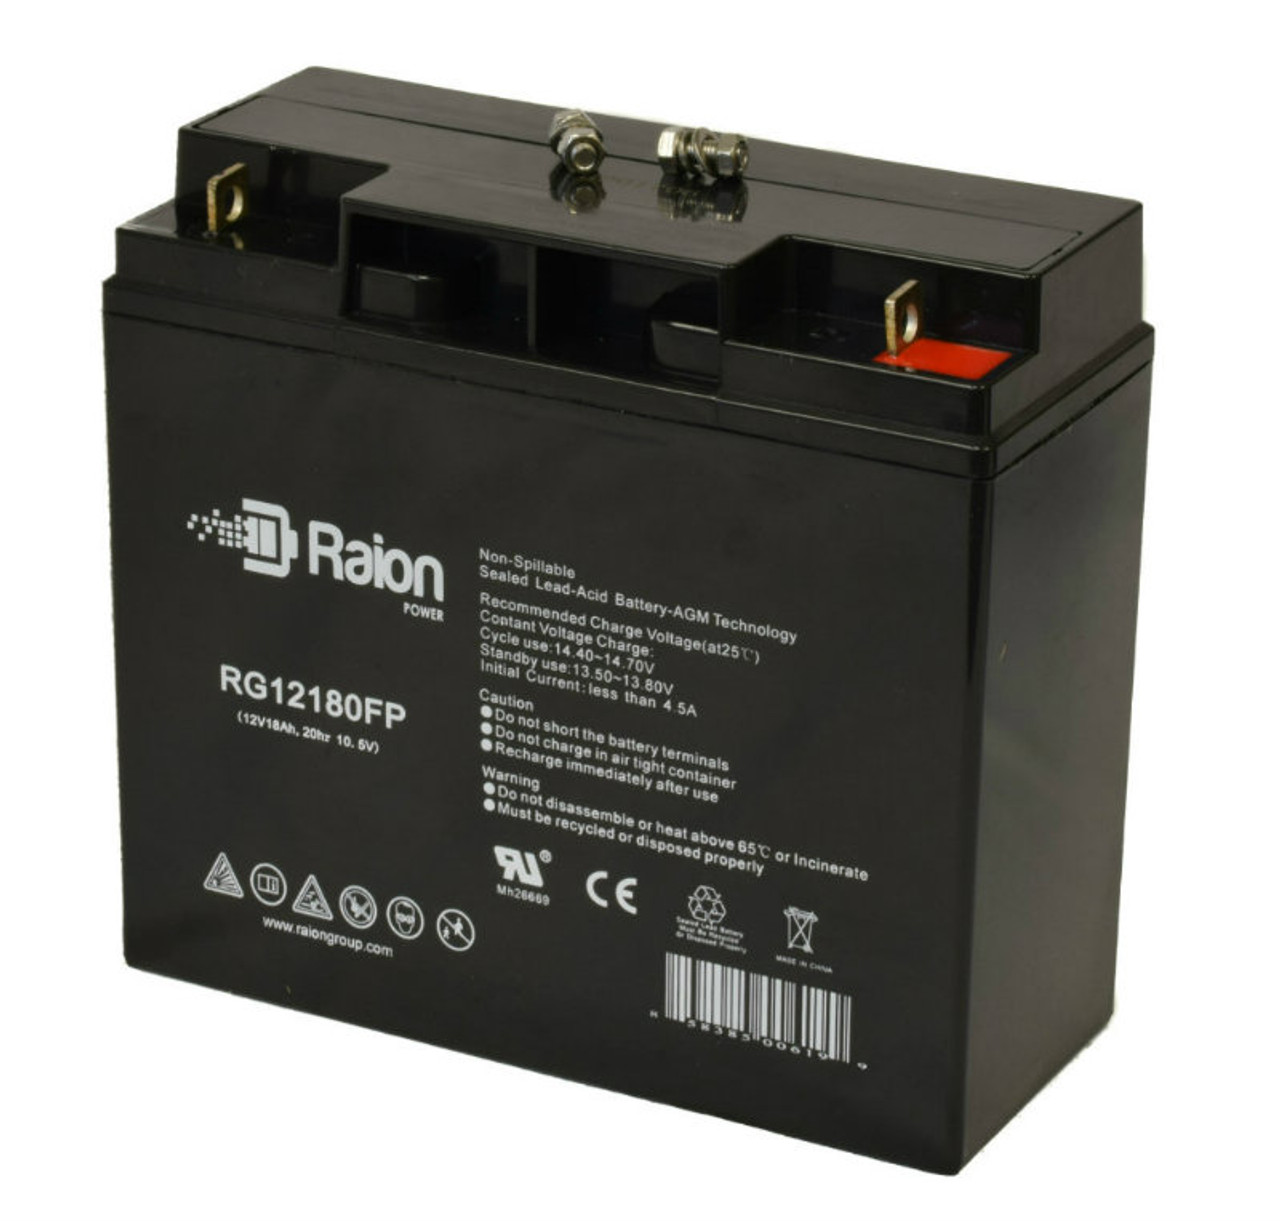 Batterie 12 volts 8,4 Ah - FIAMM FGHL (pour cosse plate) - Action